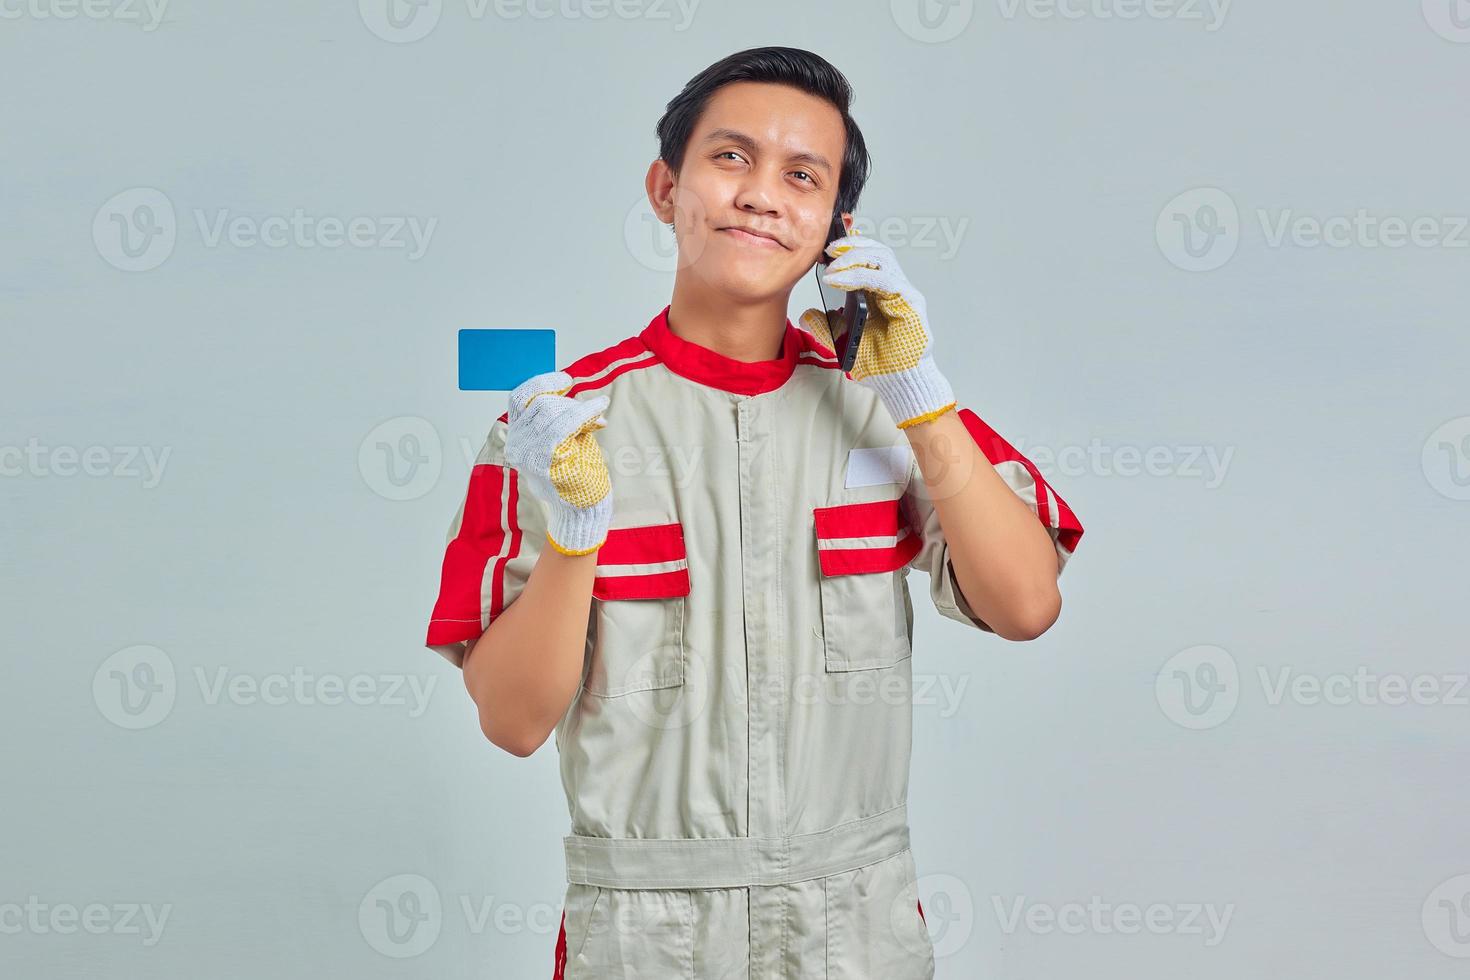 Retrato de sonriente joven mecánico mostrando tarjeta de crédito y hablando por teléfono celular sobre fondo gris foto